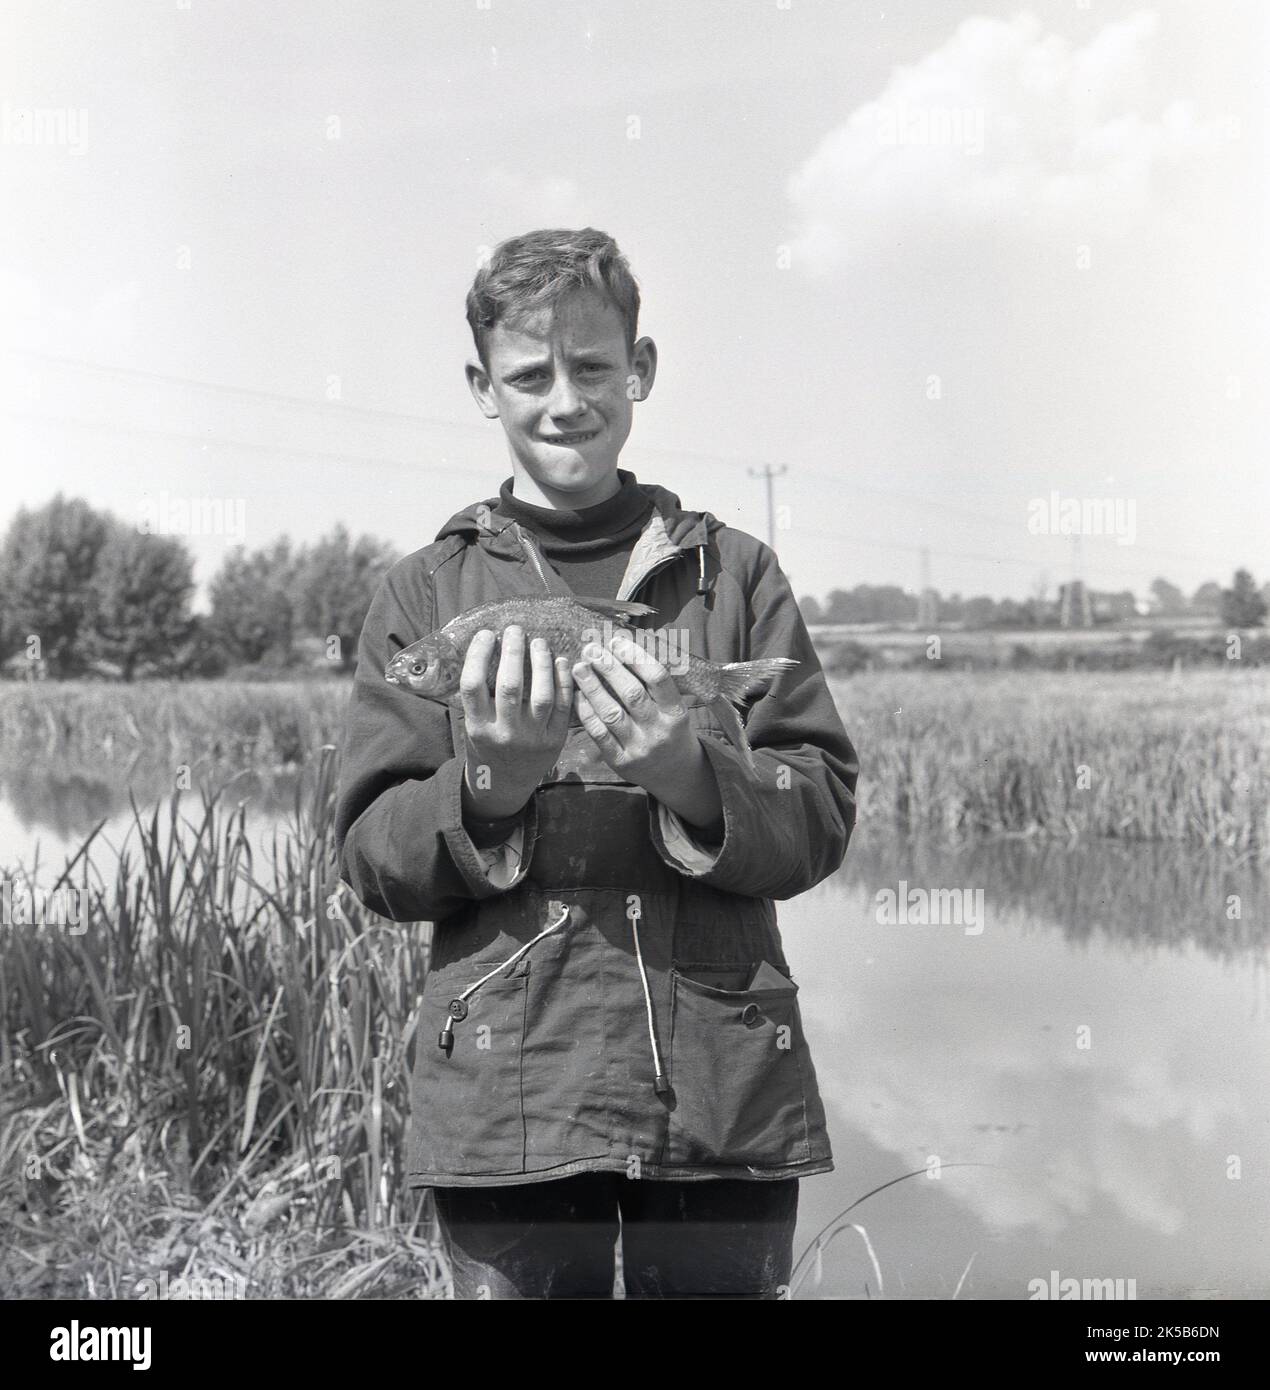 1960s, historisch, ein Teenager-Junge mit Kapuzenoberteil, Seitentaschen und Kordelzug am Bund, der an einem Flussufer steht und seinen Fang zeigt, England, Großbritannien. Die Jugend nahm an einem Fischfang Teil, Stockfoto